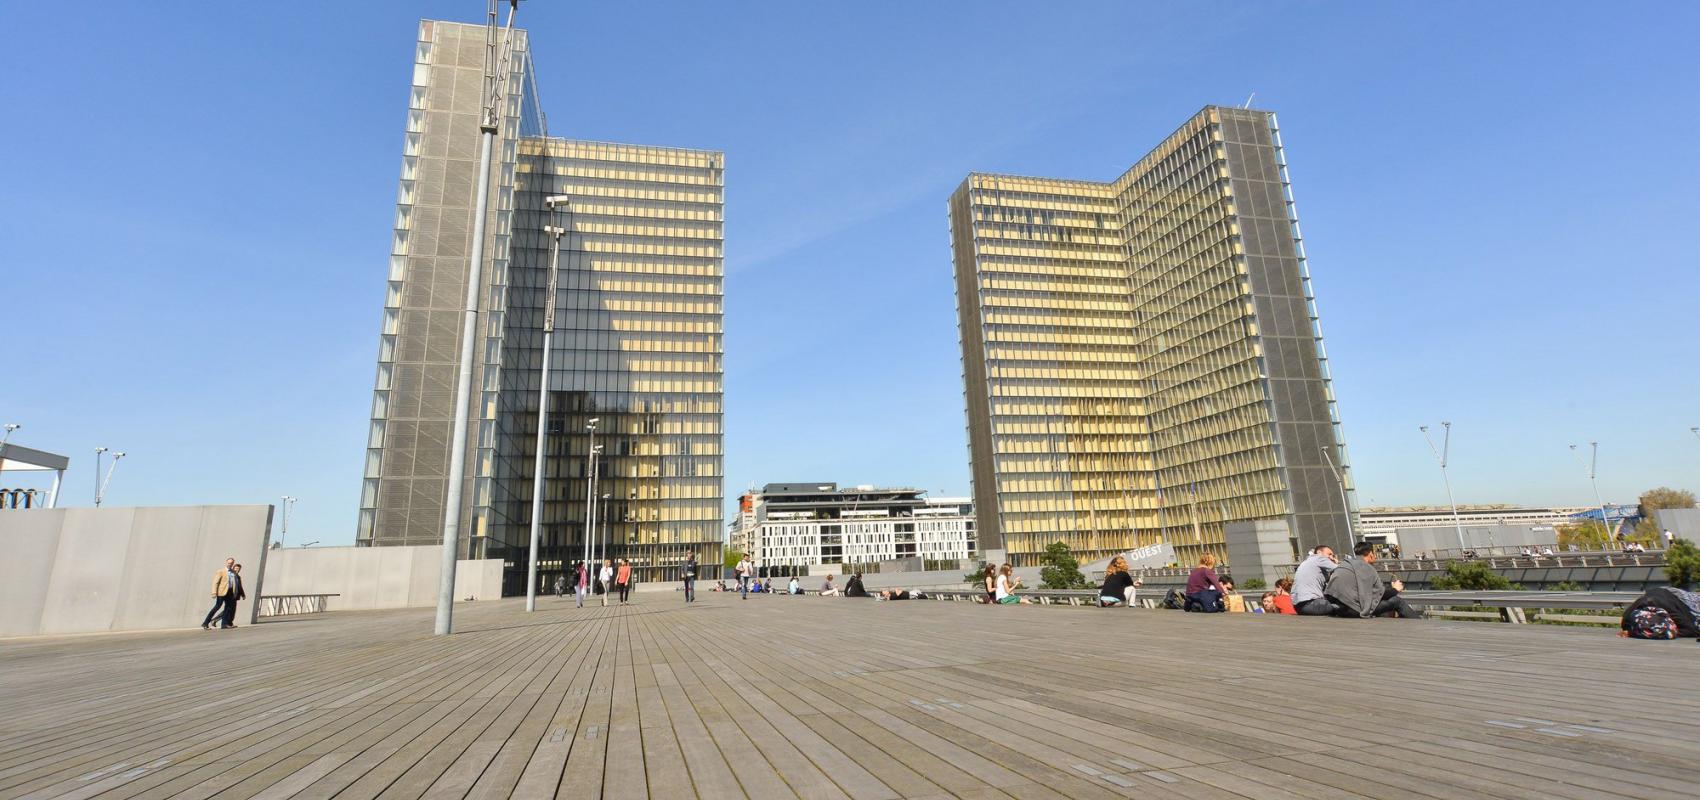 Vue de deux tours du site François-Mitterrand depuis l'esplanade -  - BnF